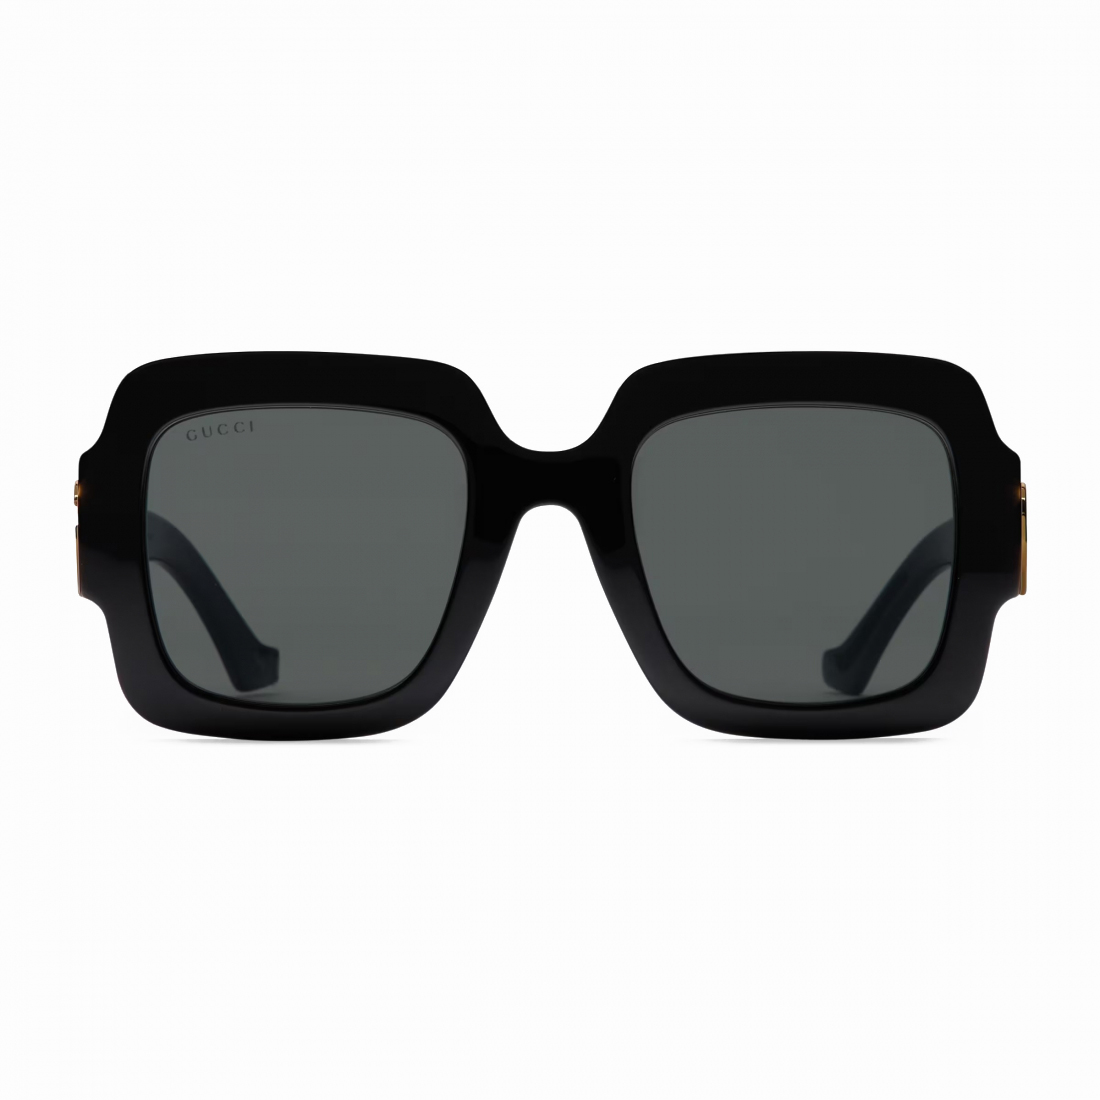 Women's 'GG1547S' Sunglasses